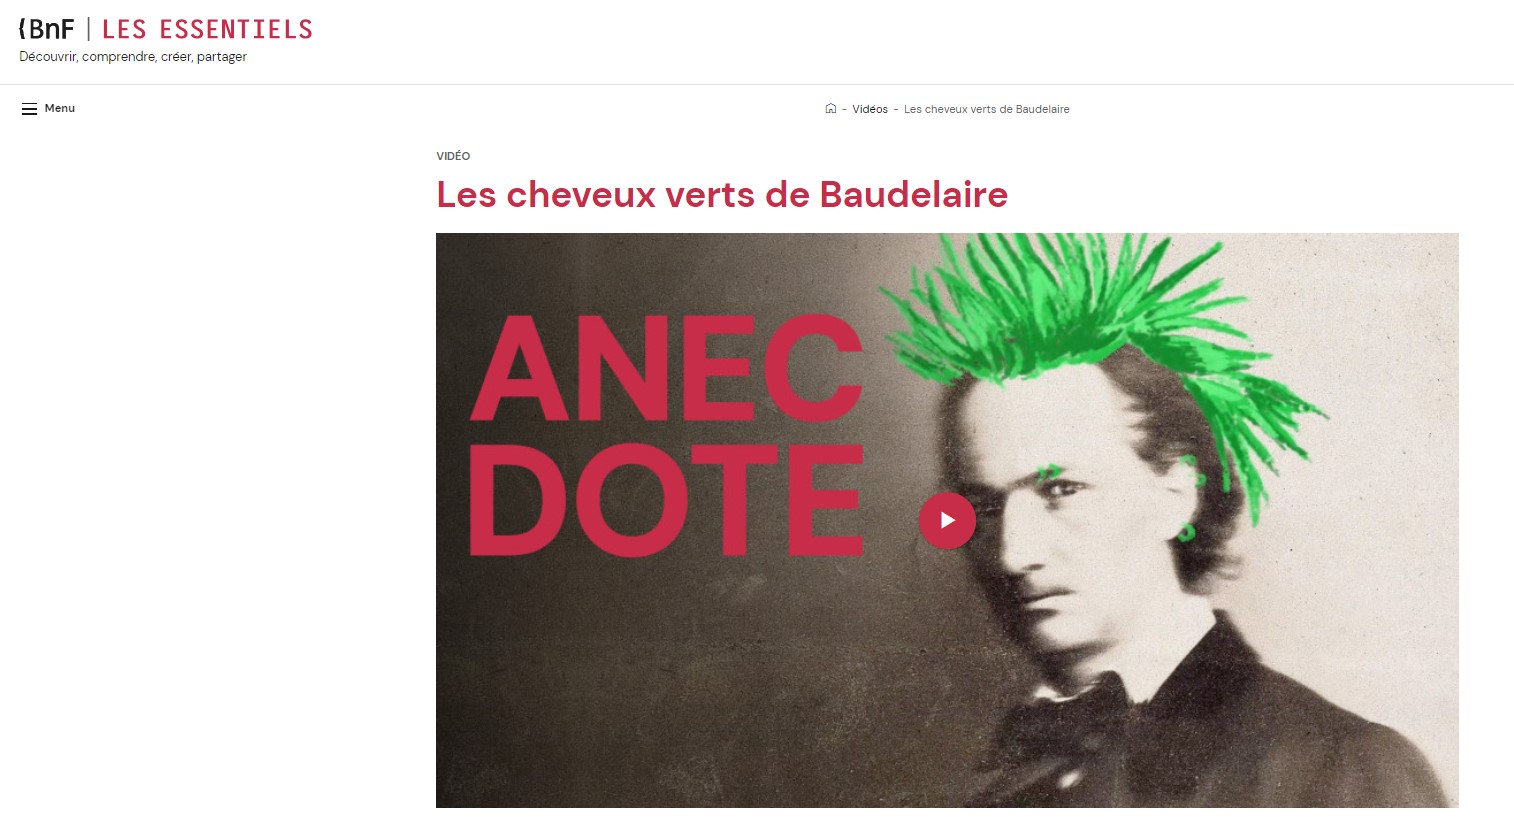 Capture d'écran du site de la BnF Les essentiels intitulé Les cheveux verts de Baudelaire